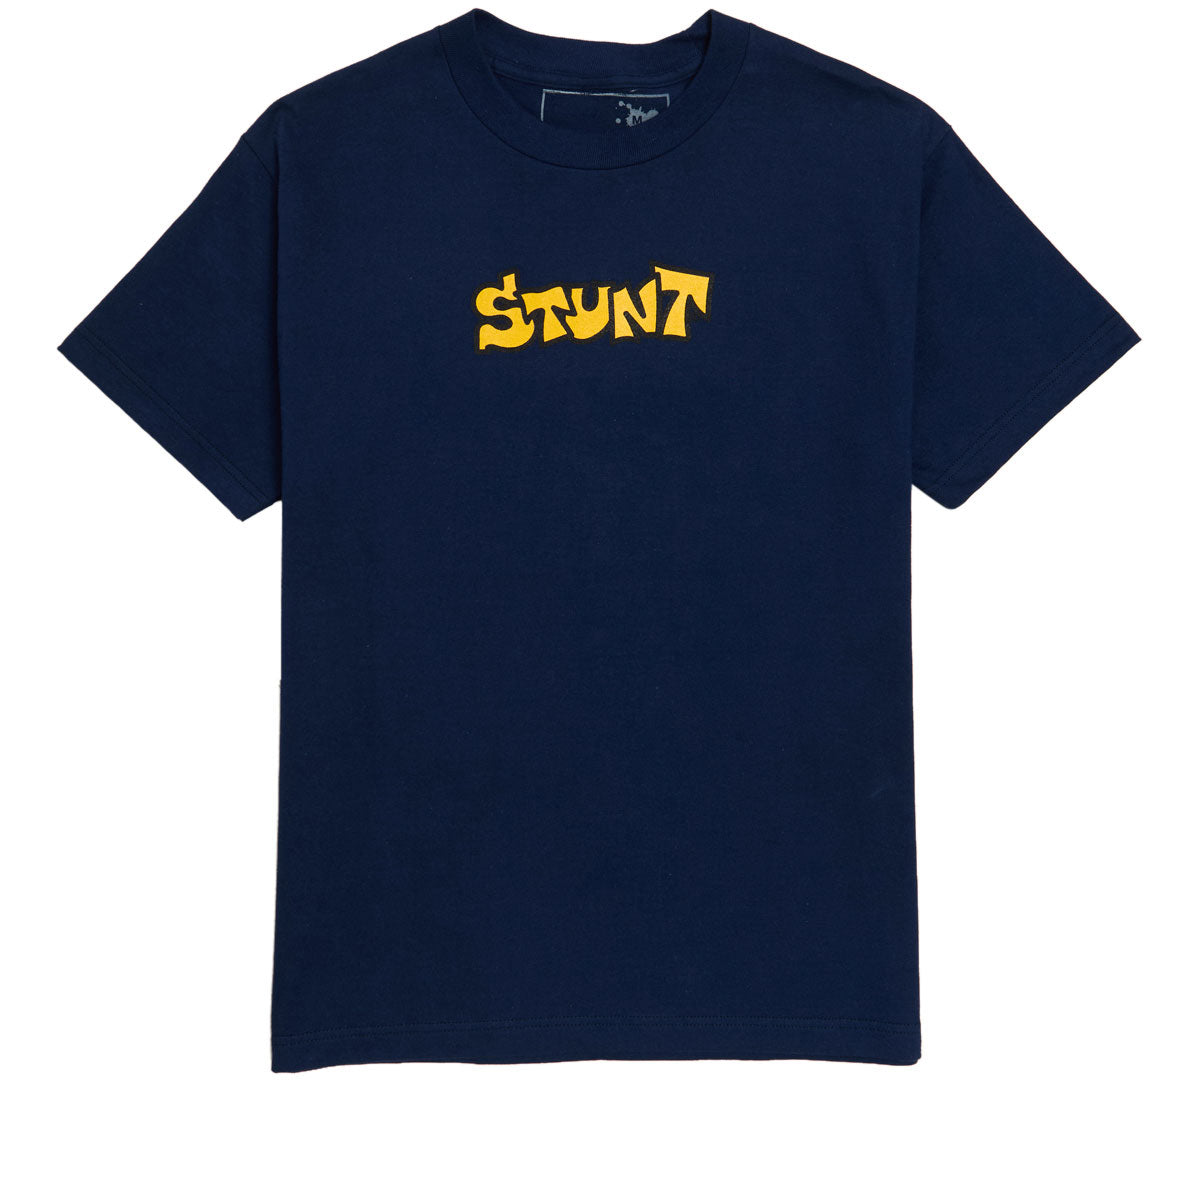 Stunt OG Stunt T-Shirt - Navy image 1